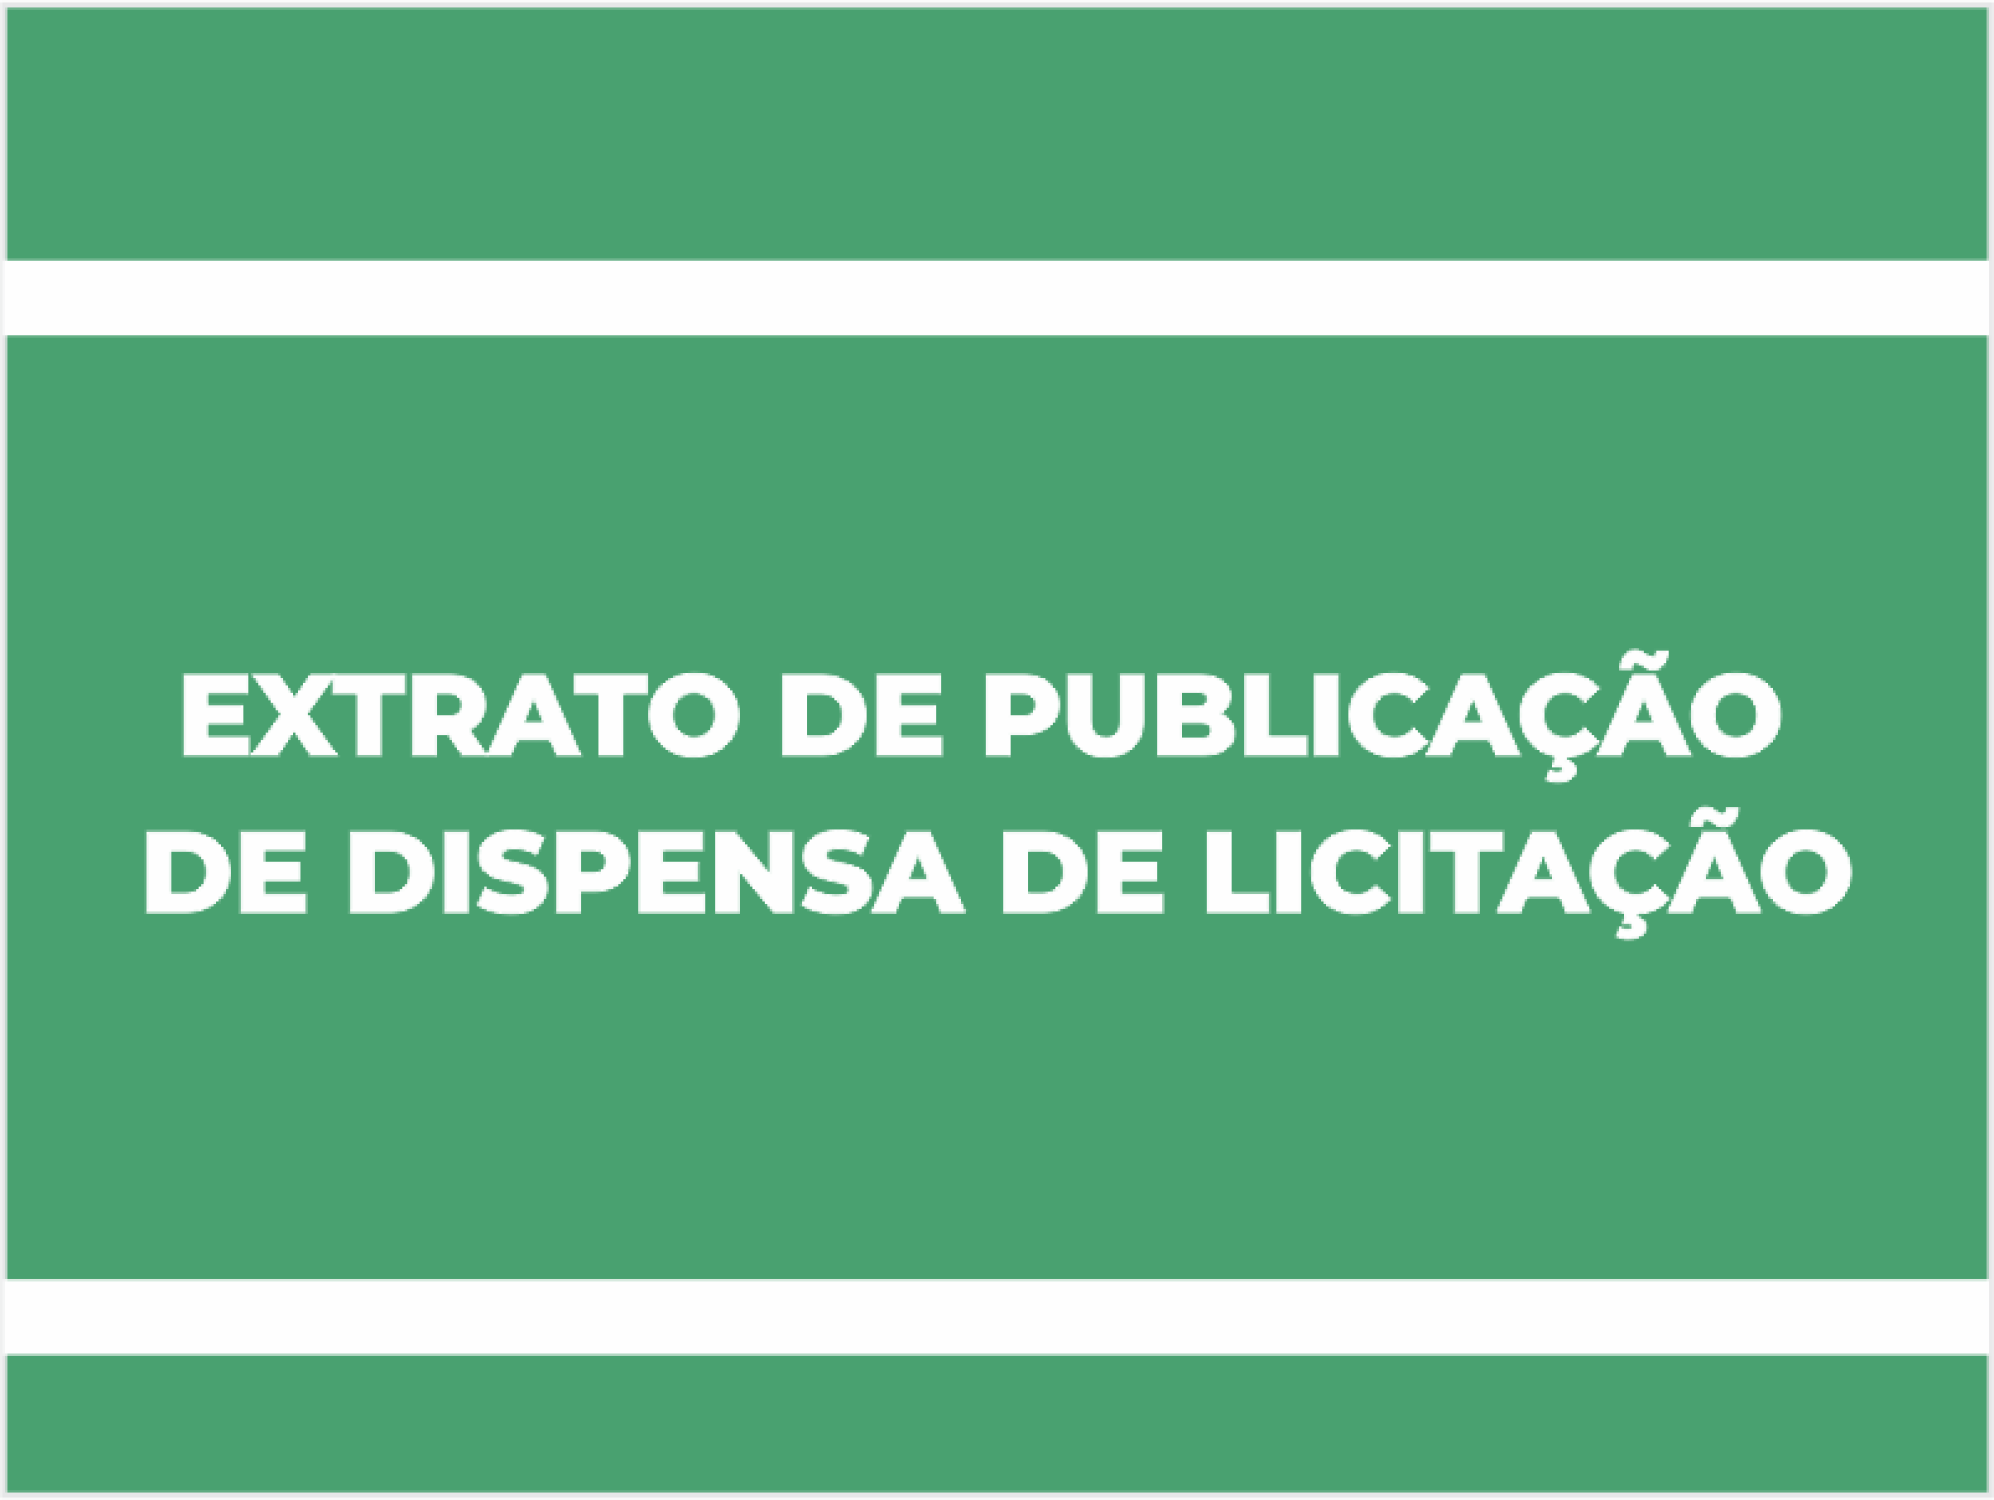 EXTRATO DE PUBLICAÇÃO DE DISPENSA DE LICITAÇÃO